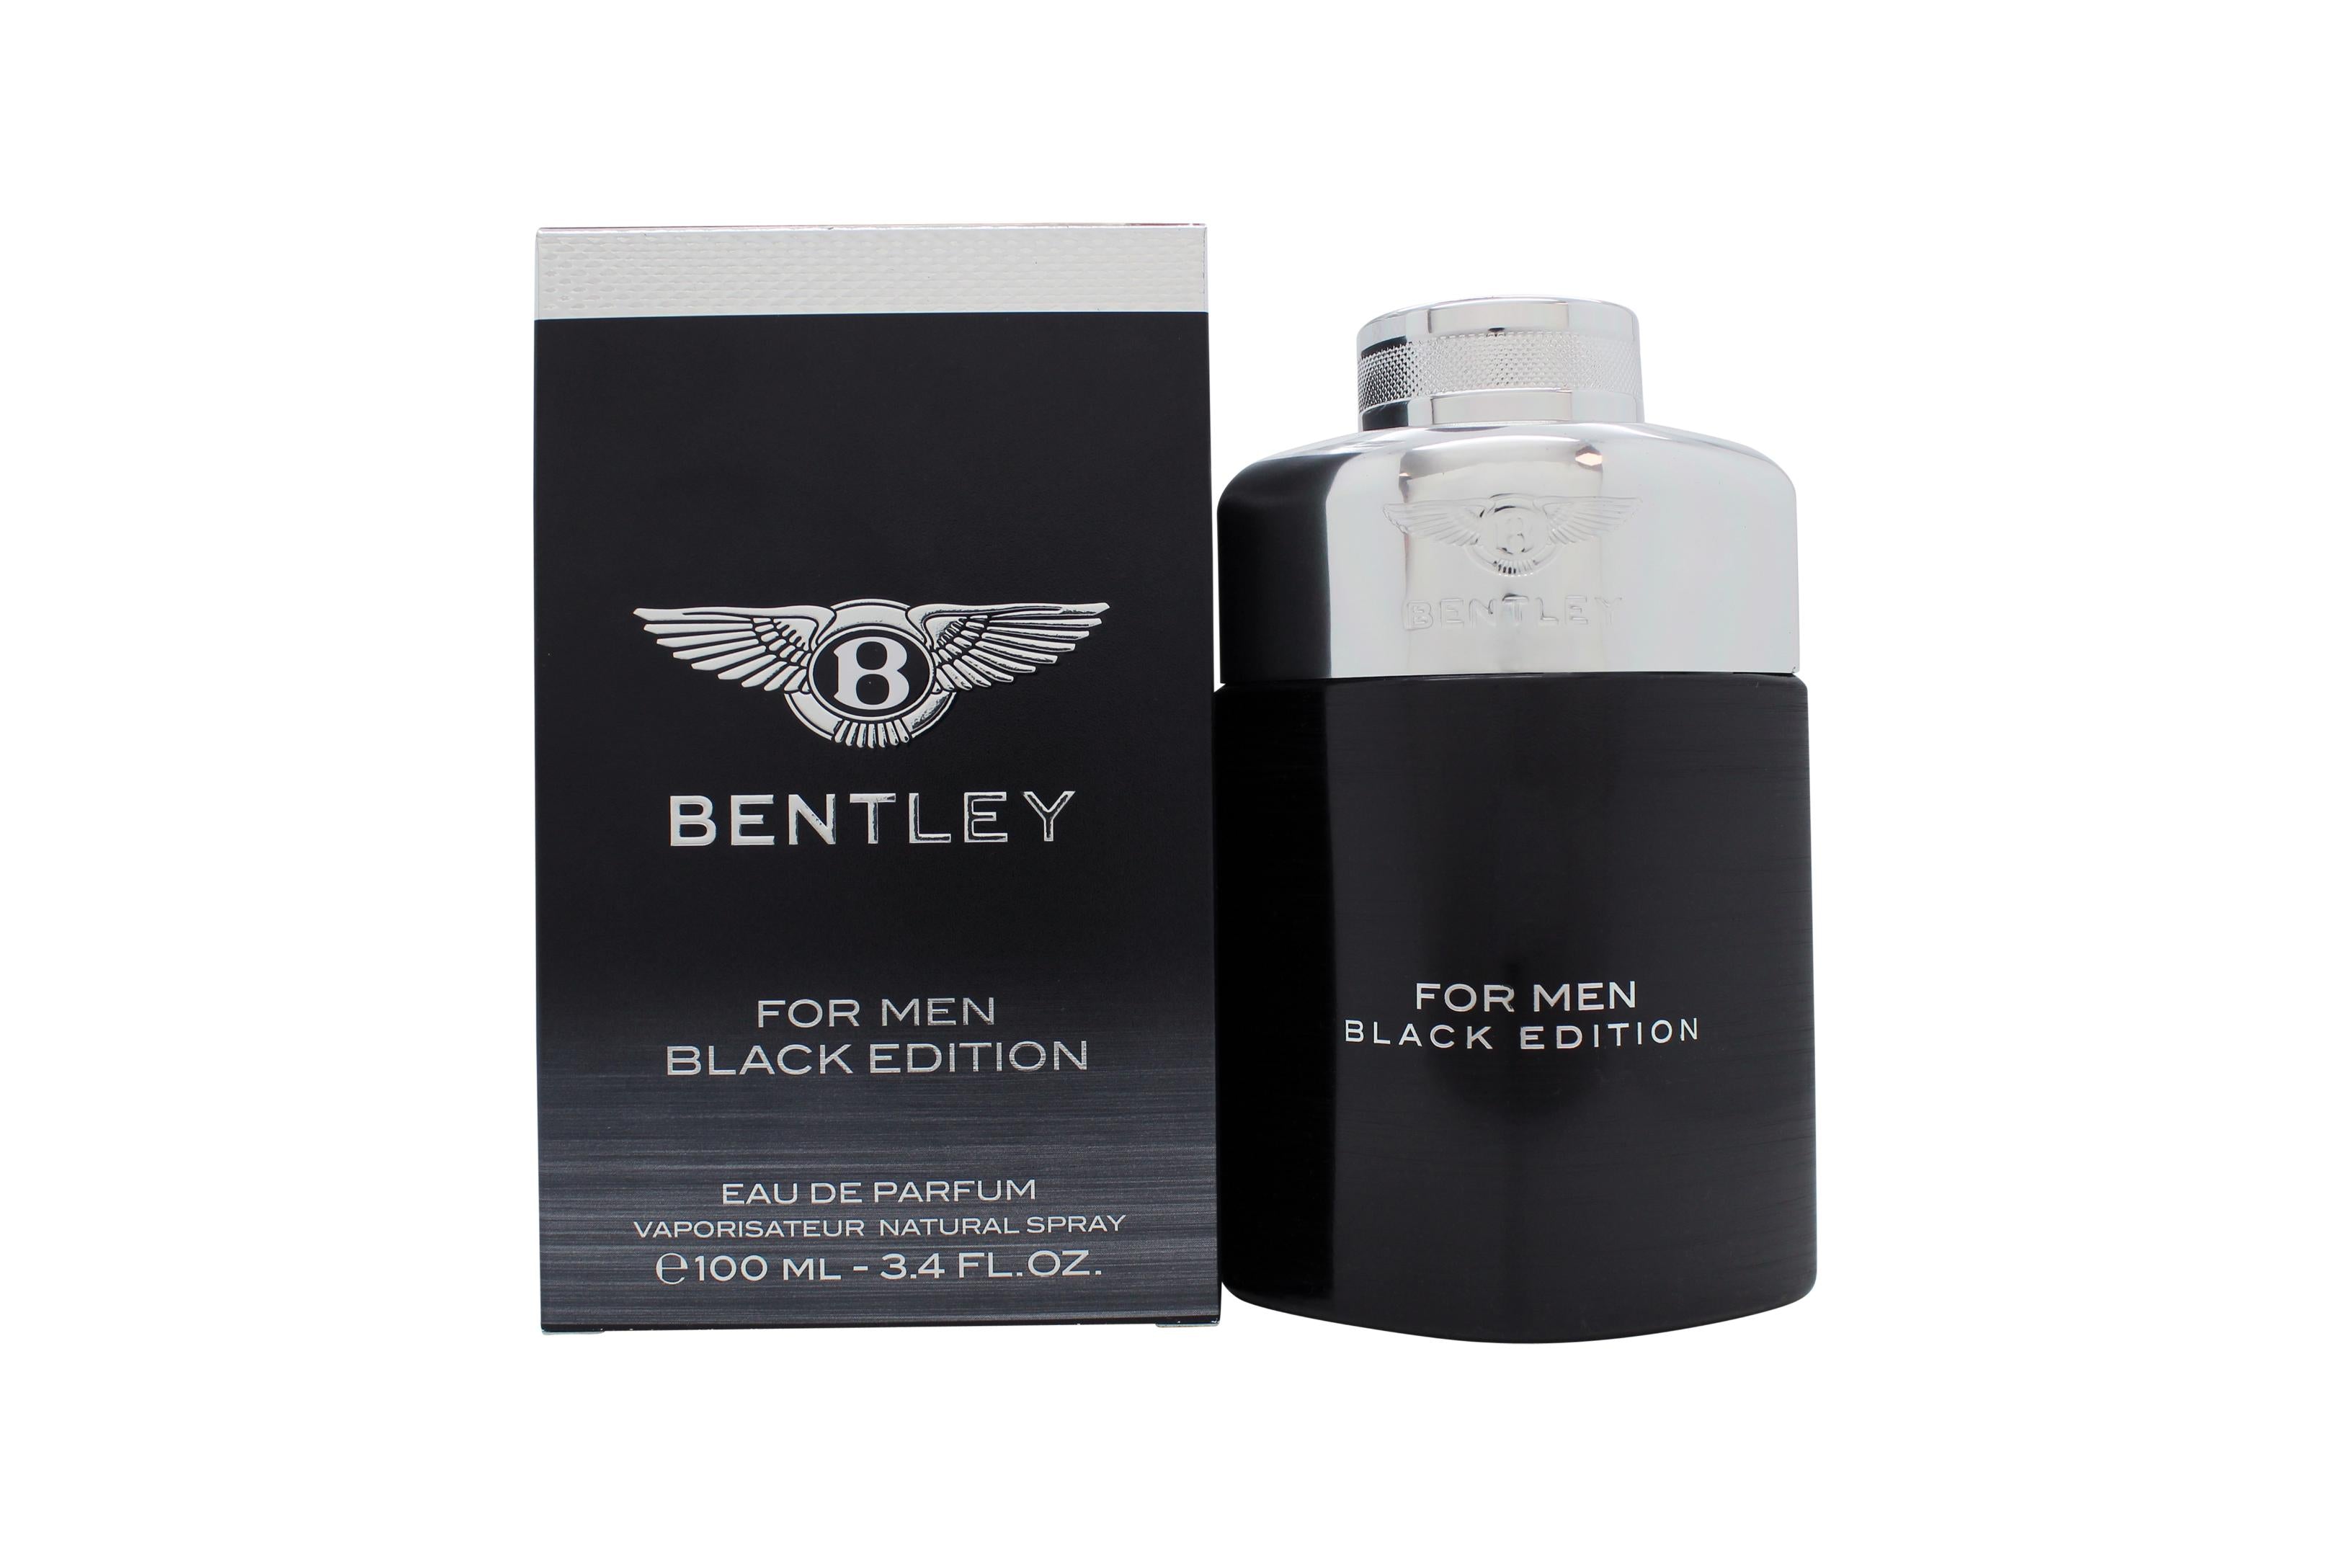 View Bentley For Men Black Edition Eau de Parfum 100ml Spray information